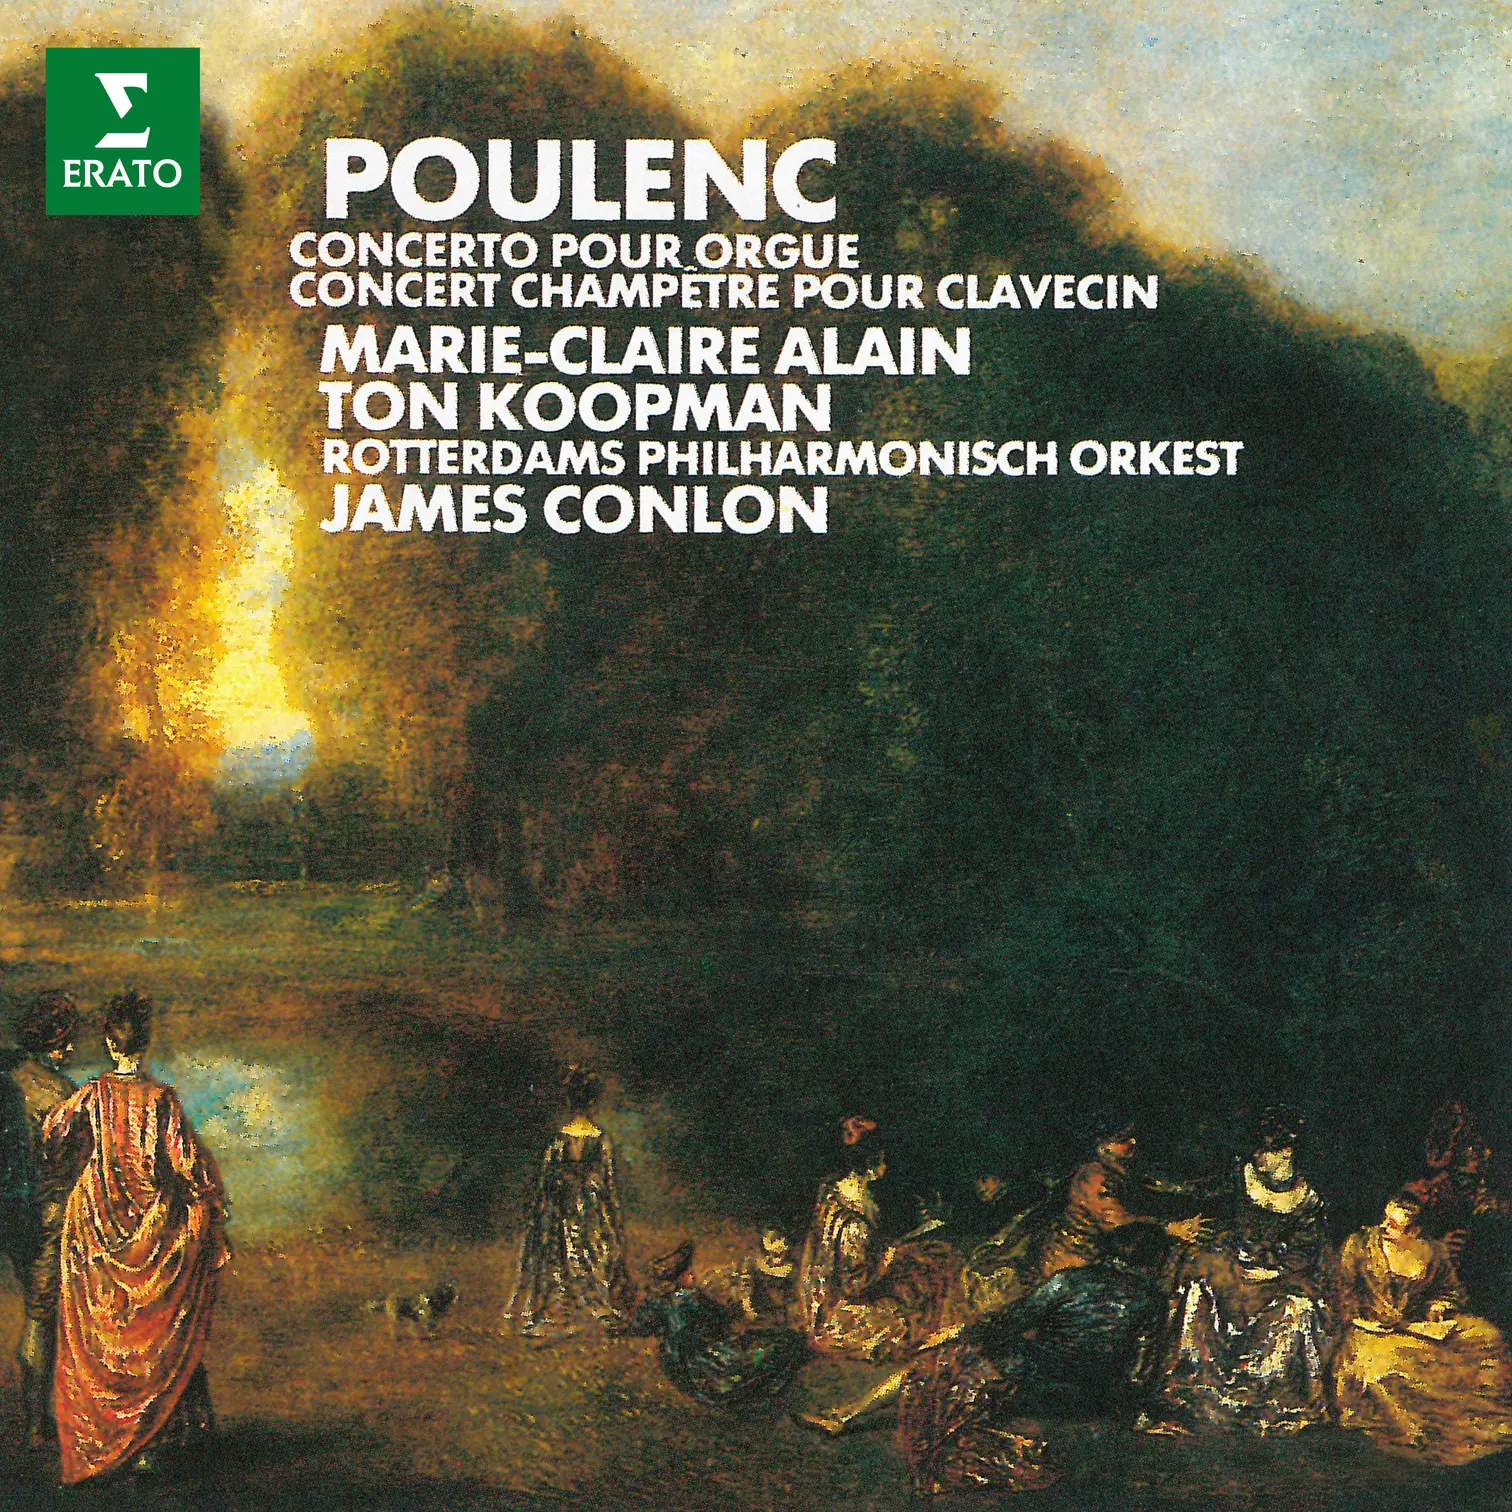 Poulenc: Concerto pour Orgue & Concert Champêtre